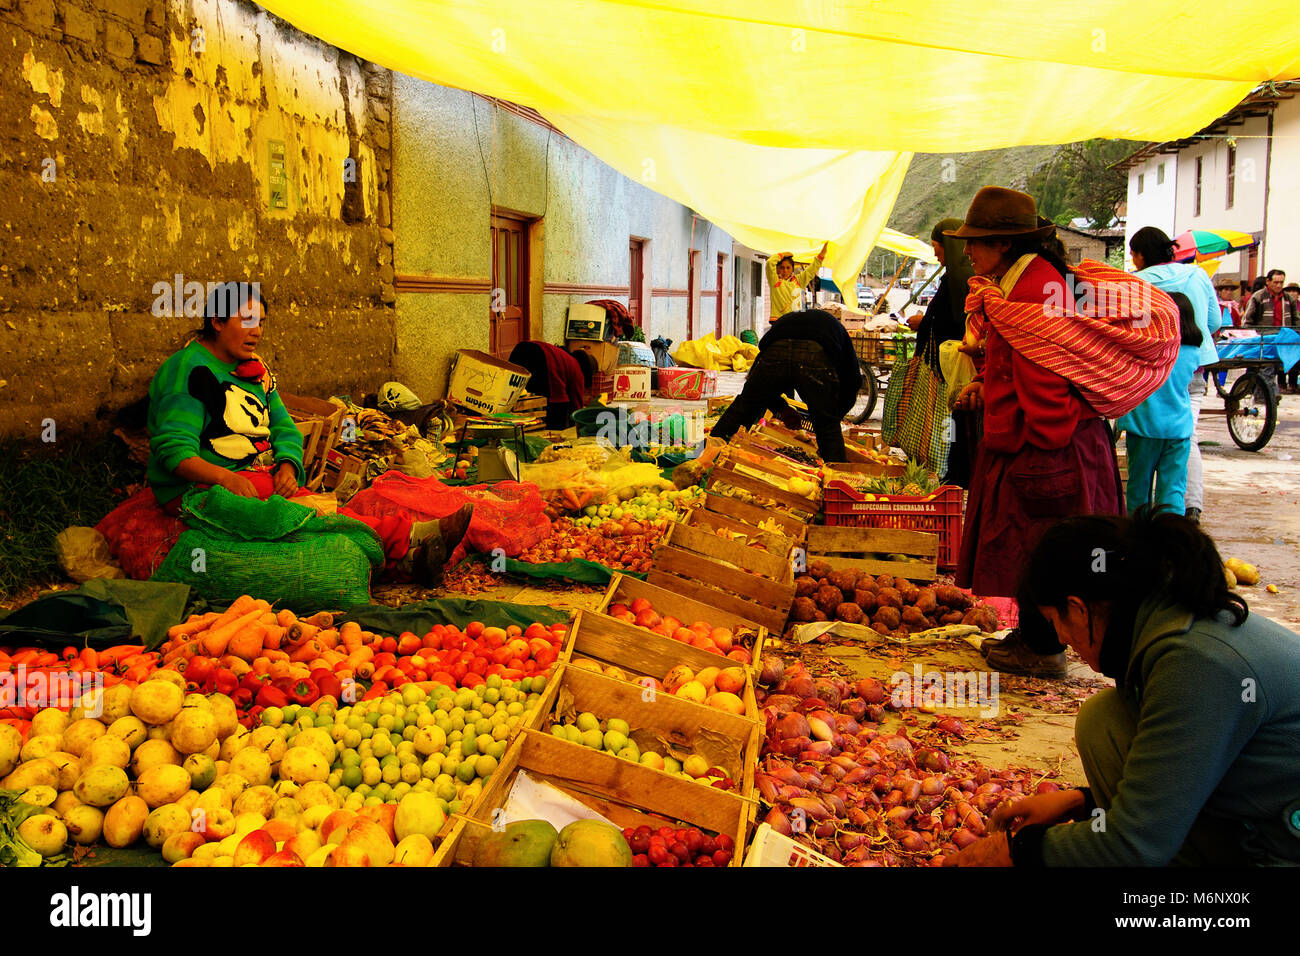 LA RÉGION, le Pérou - 05 février 2012 : femme ethnique péruvienne dans les vêtements nationaux vente de produits agricoles et d'autres produits alimentaires sur le marché - La Paz Banque D'Images